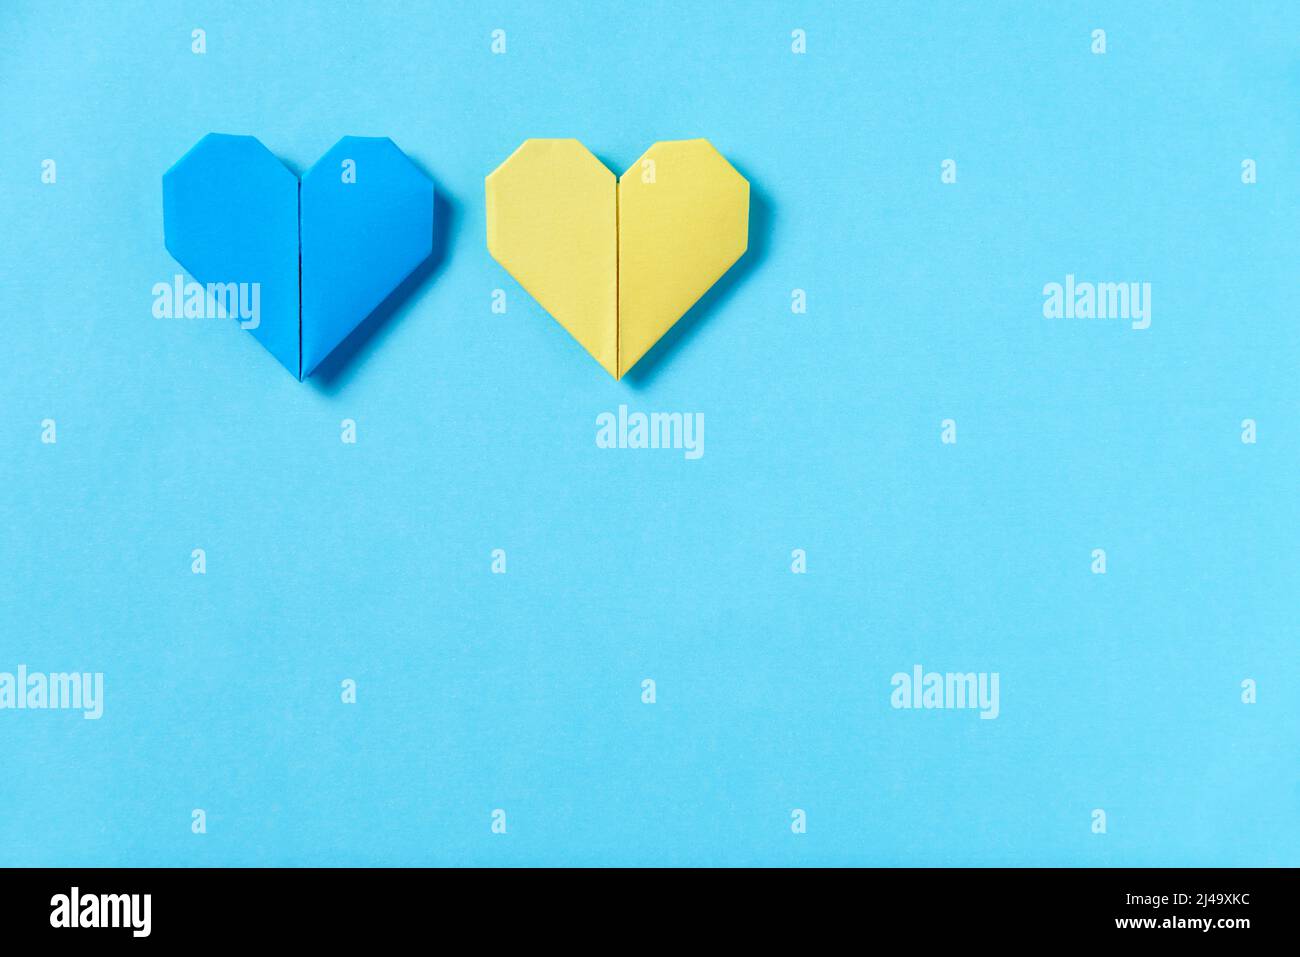 Cuori di origami blu e giallo, colori della bandiera Ucraina. Immagine simbolica concettuale a sostegno di questo paese durante l'invasione russa. Desidera f Foto Stock